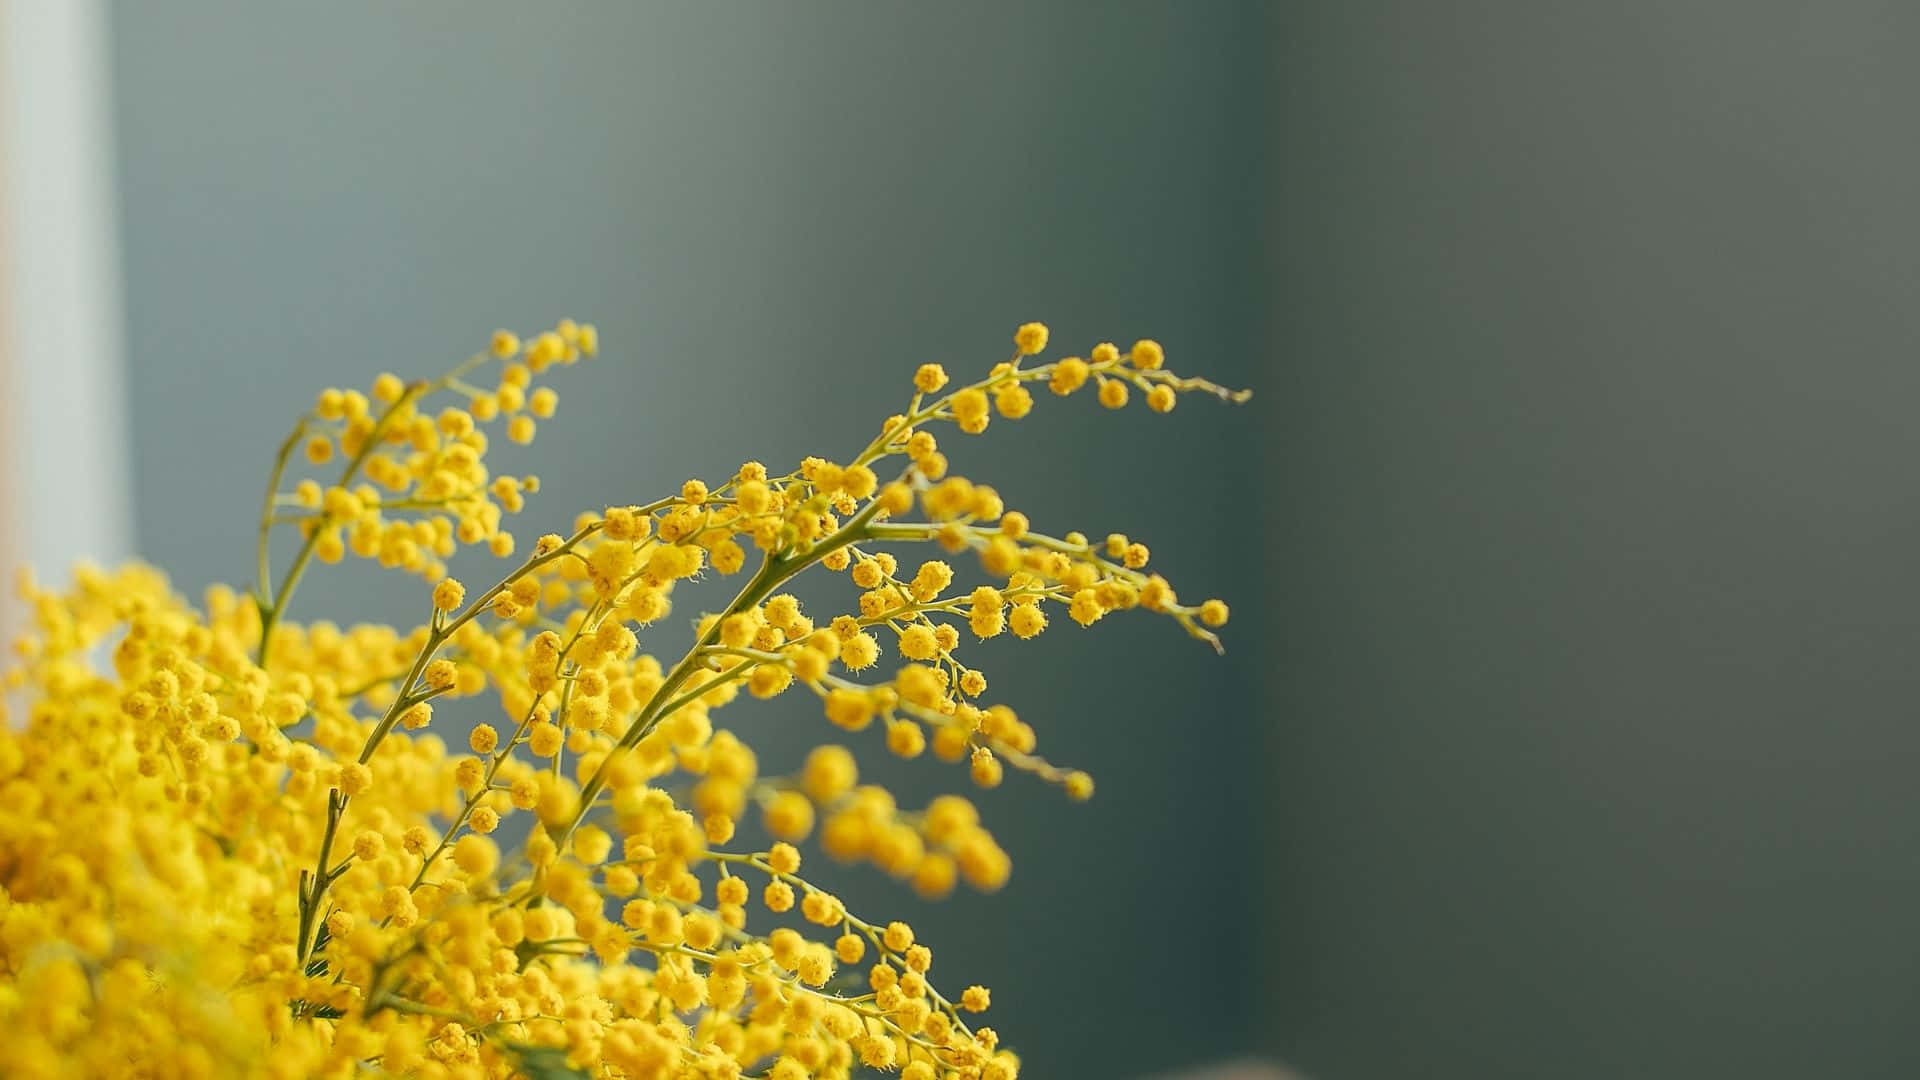 Nyd den skønhed, som solen bringer med dette gule æstetiske baggrundsbillede!